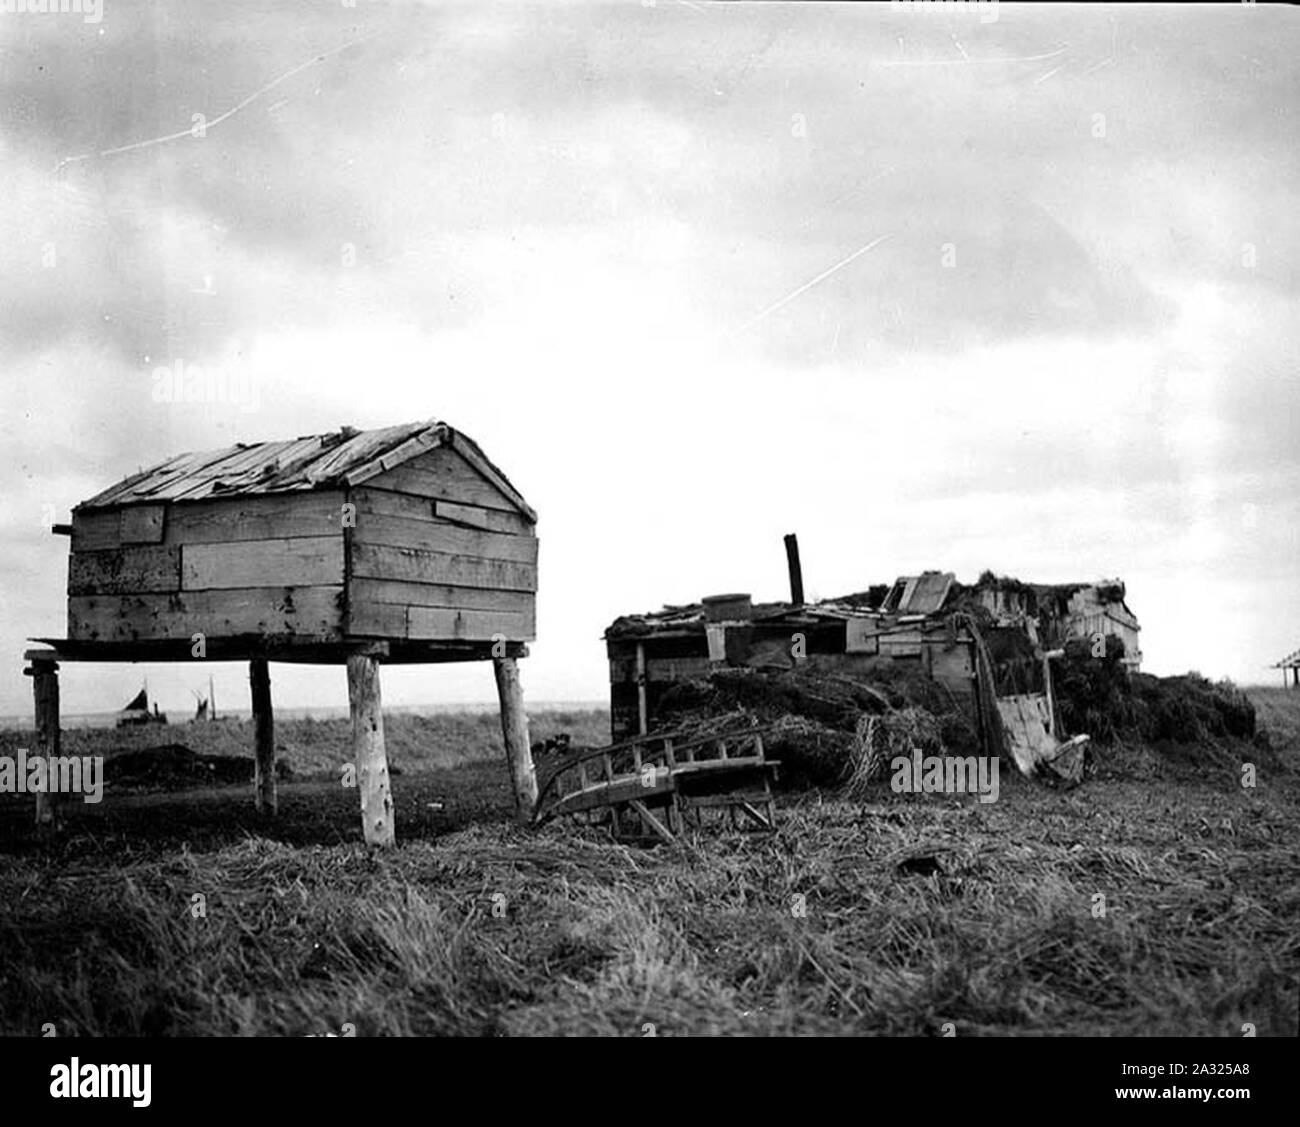 Eskimo barabara, ou sod hut, et de l'alimentation, la mémoire cache Nushagak, Alaska, 1917 (134) Cobb. Banque D'Images